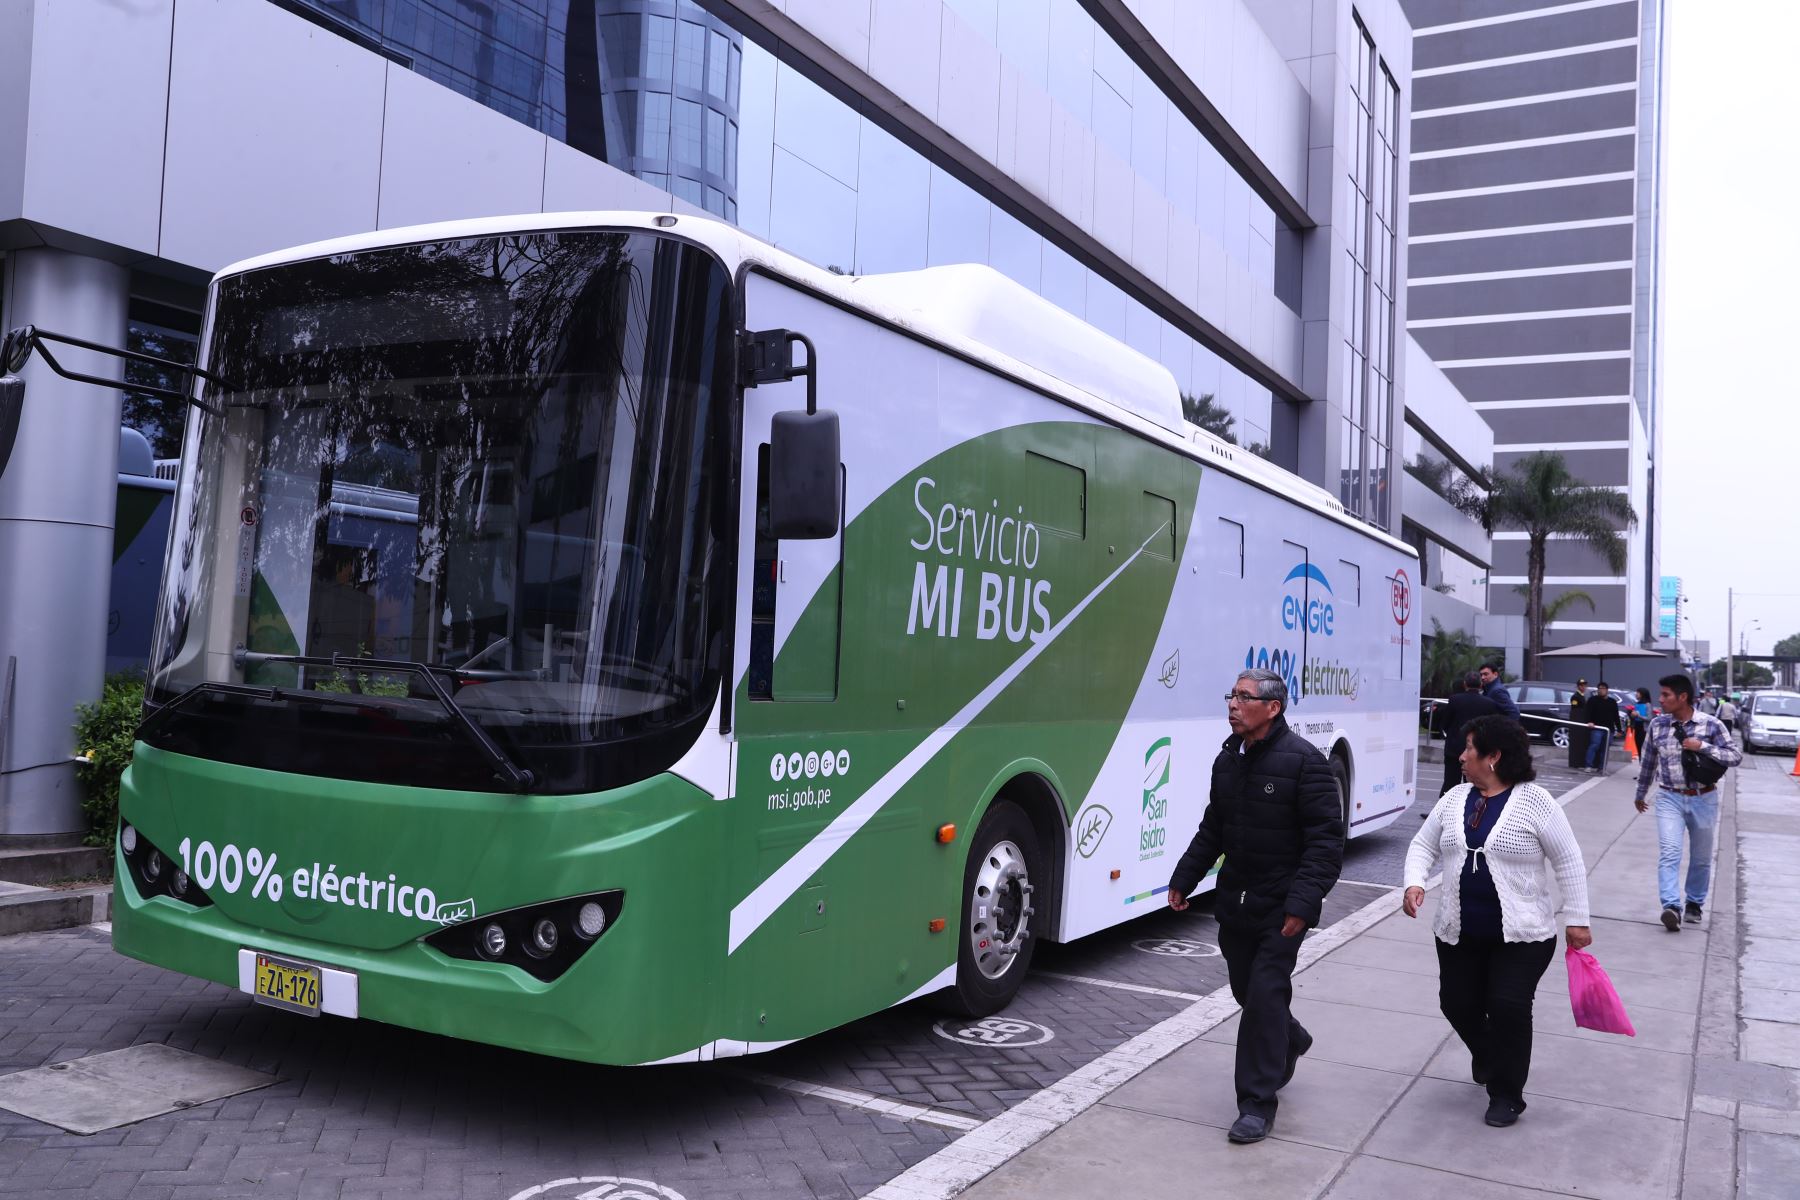 *El bus eléctrico transportará gratuitamente a quienes requieran movilizarse por las calles de San Isidro dentro de la ruta establecida por la municipalidad para el servicio “Mi Bus”. 
Foto: ANDINA/Minem